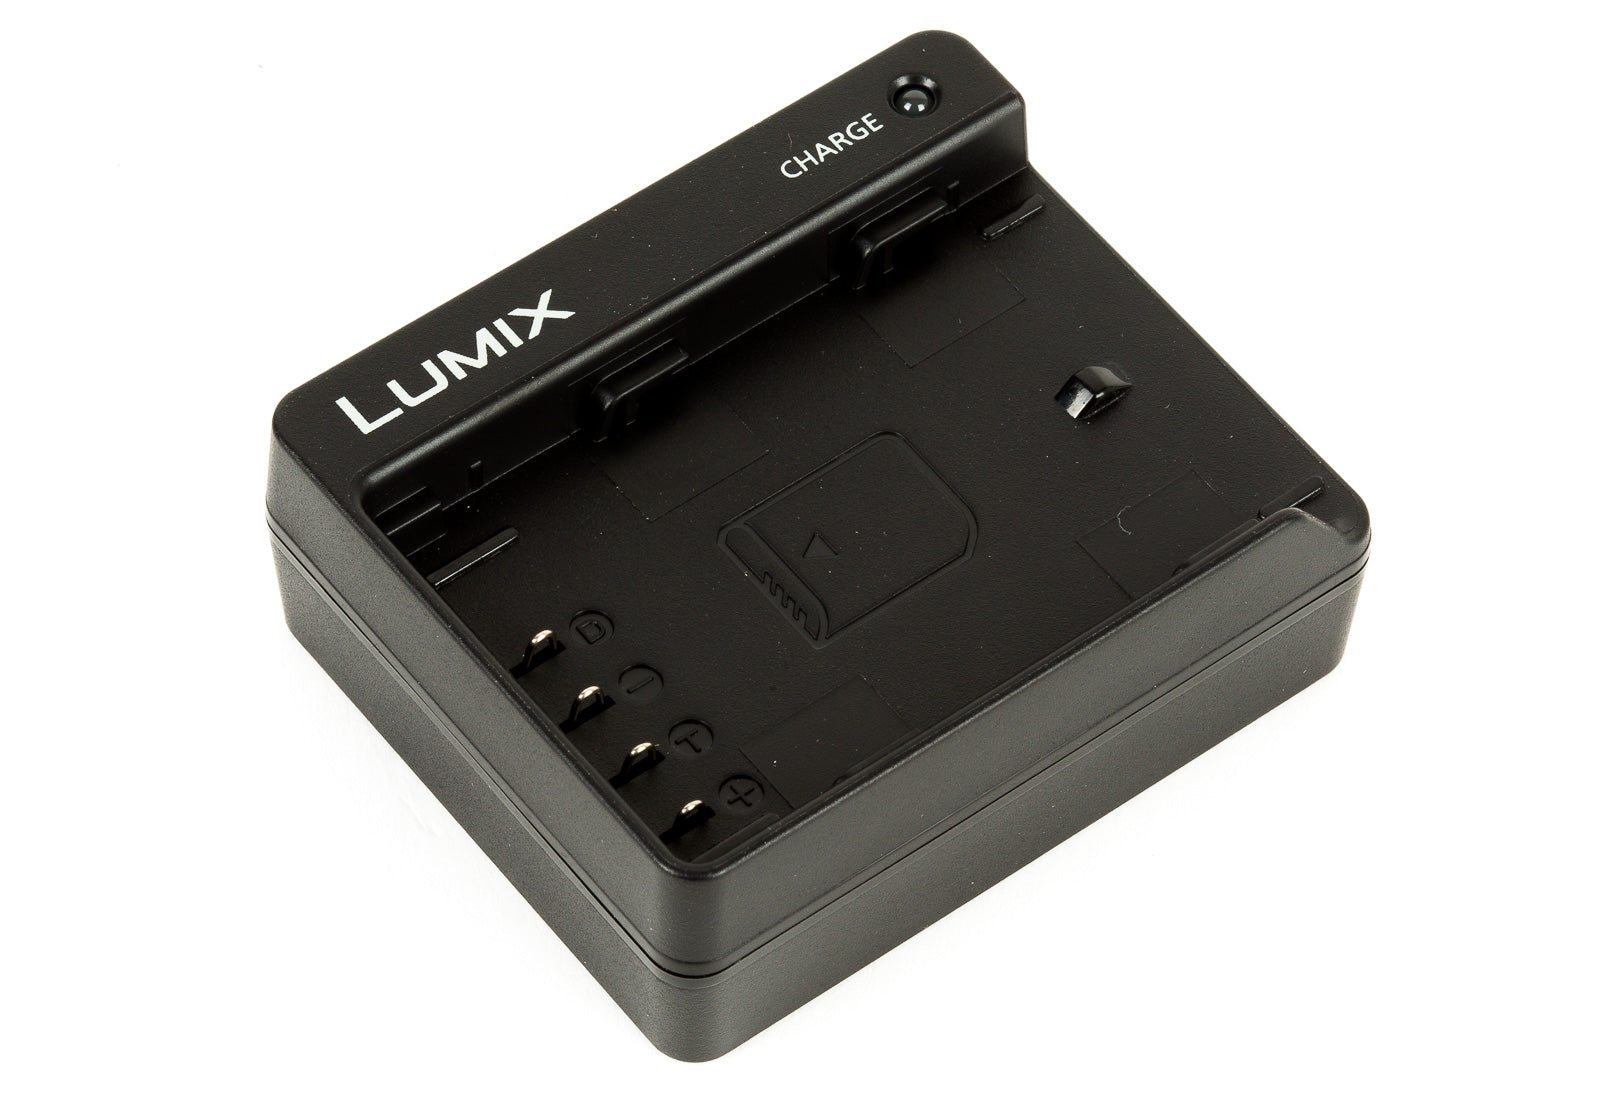 Panasonic Lumix DMW-BTC13 battery charger for a DMW-BLF19 battery